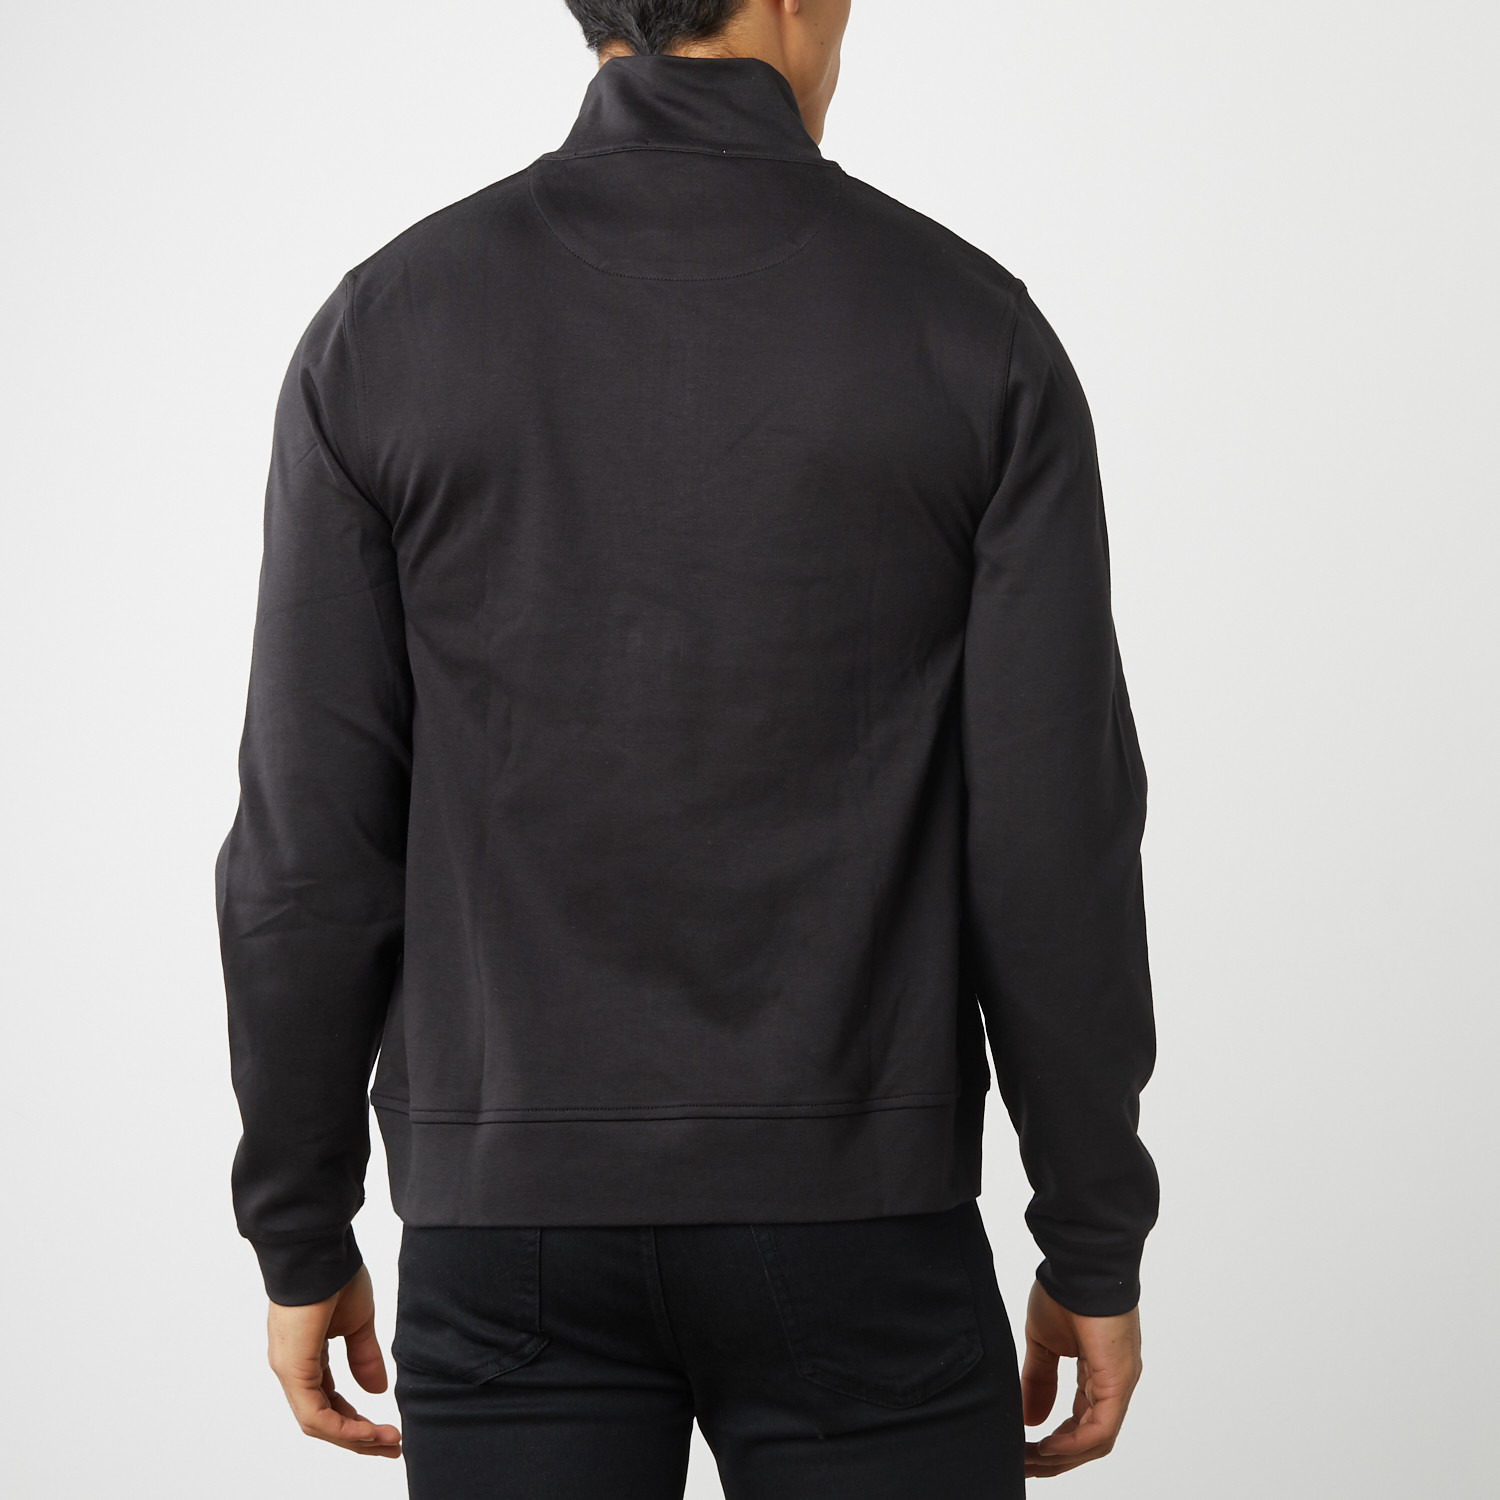 100% Pima Cotton Sweatshirt Half Zipper (XS) - Etiqueta Negra - Touch ...